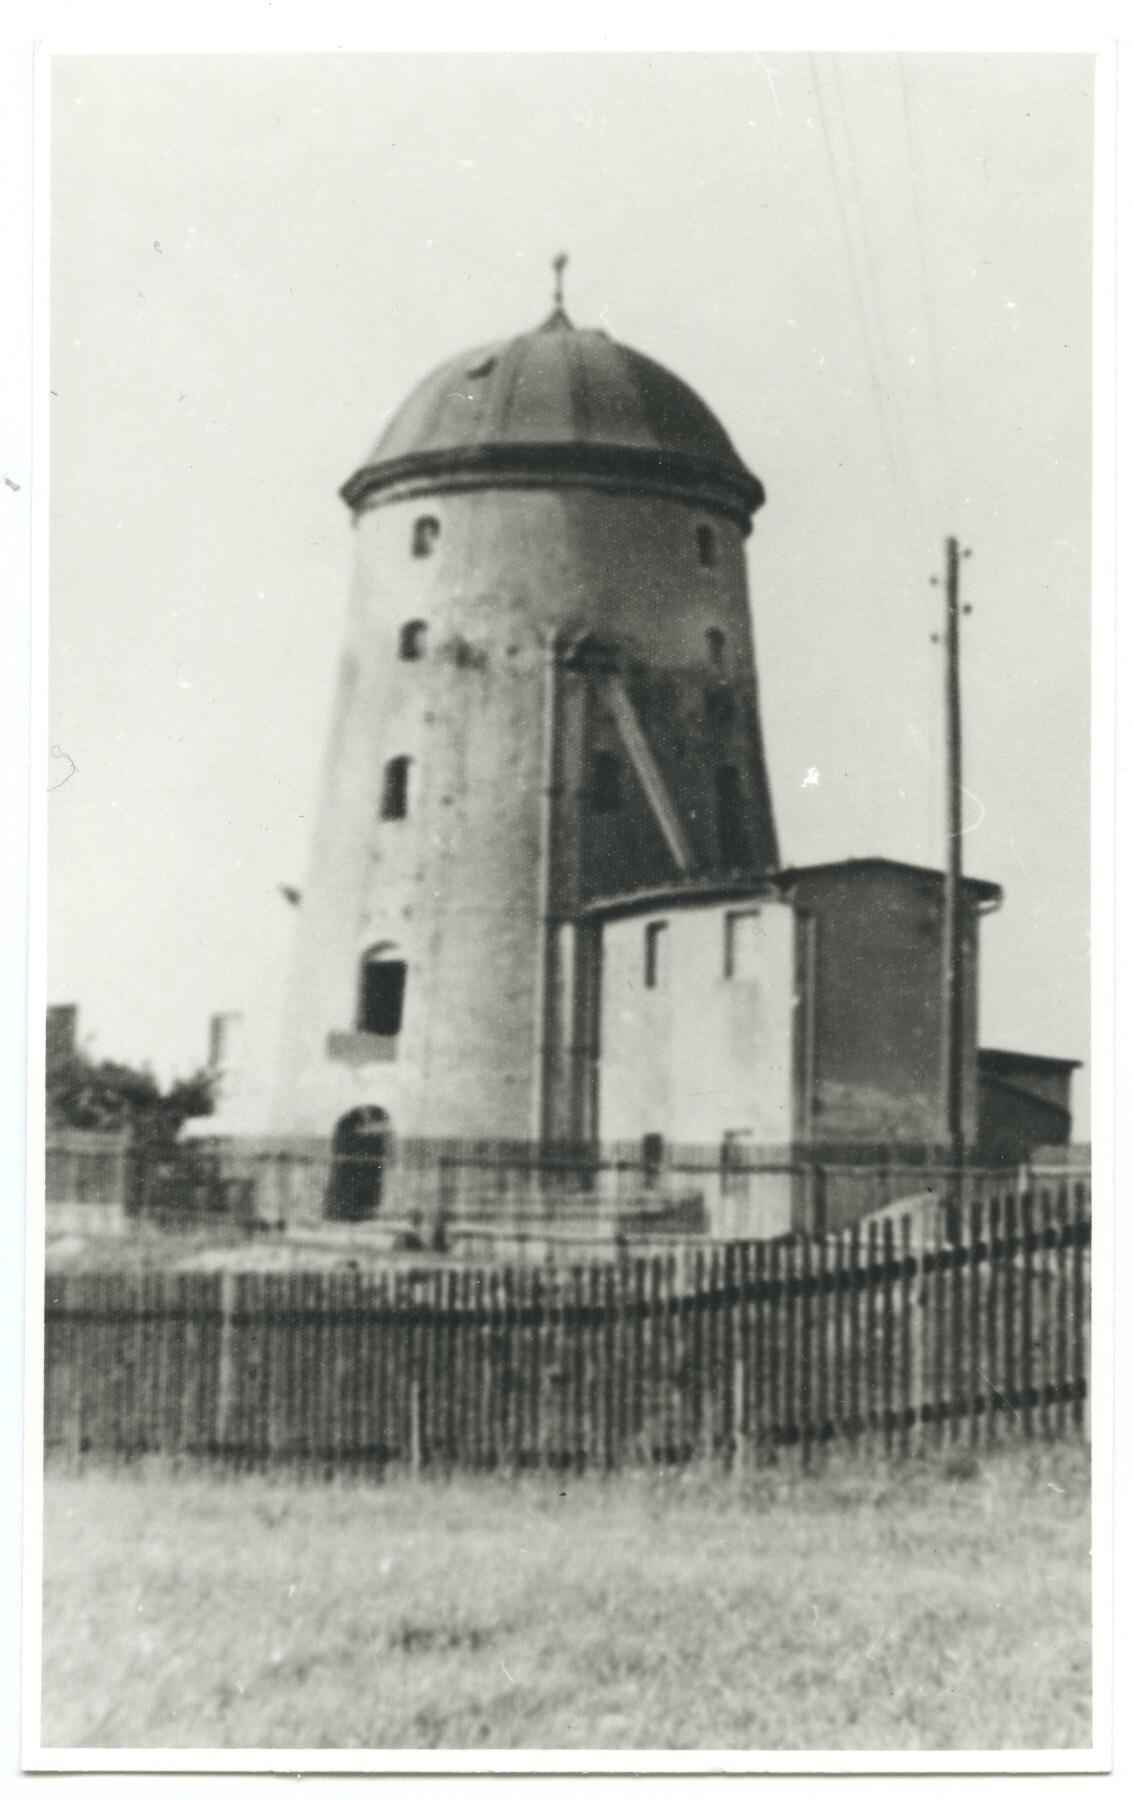 Turmwindmühle Fremdiswalde (Historische Mühle von Sanssouci CC BY-NC-ND)